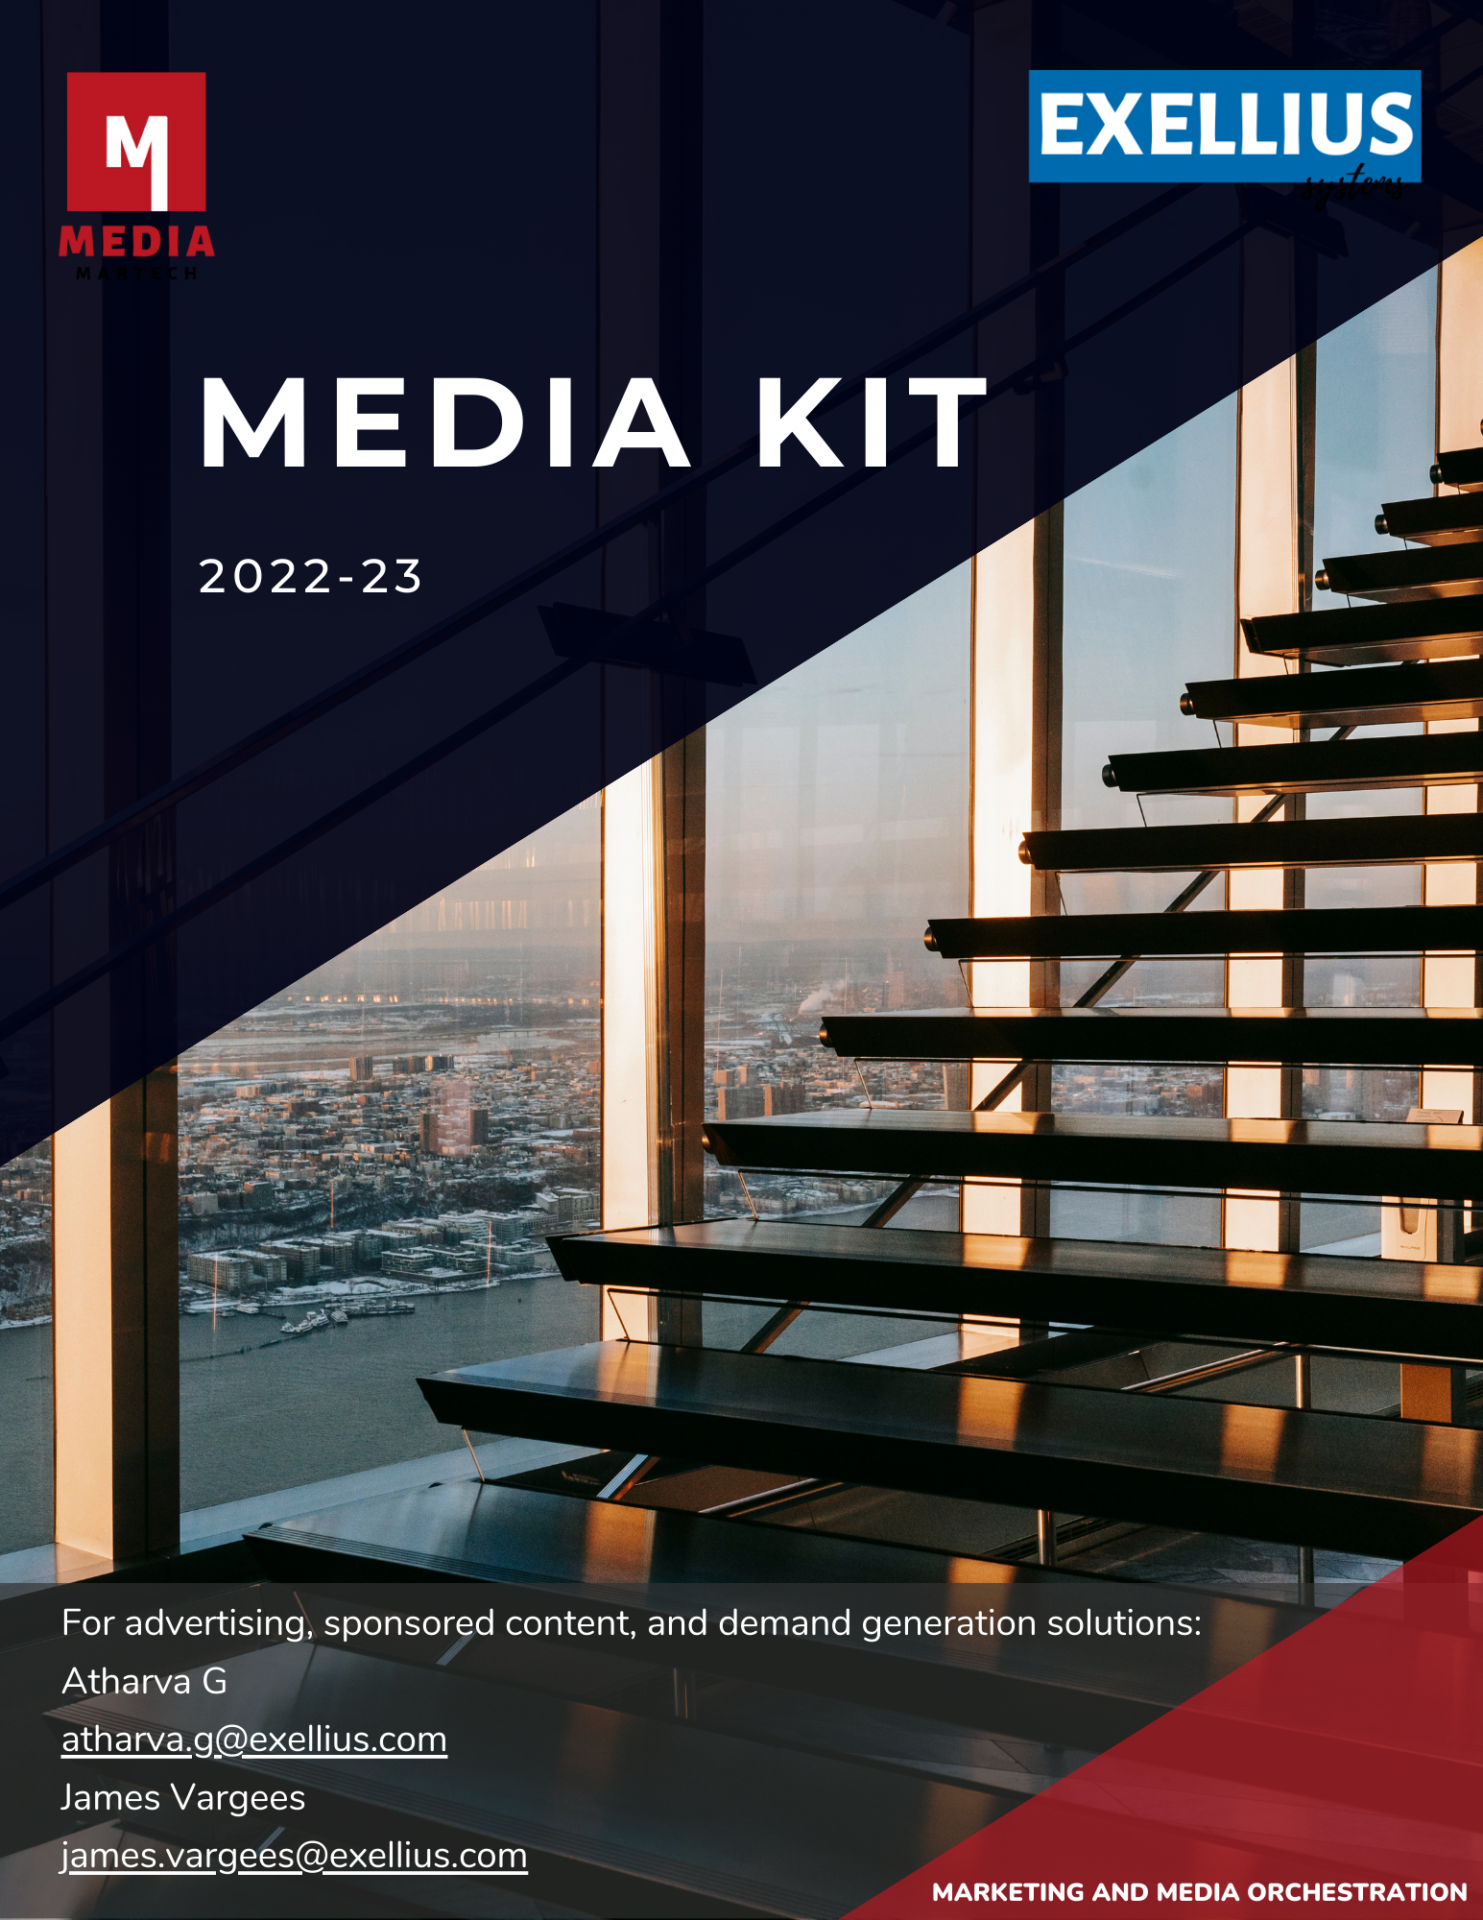 Exellius Media Kit 2022-23.pdf